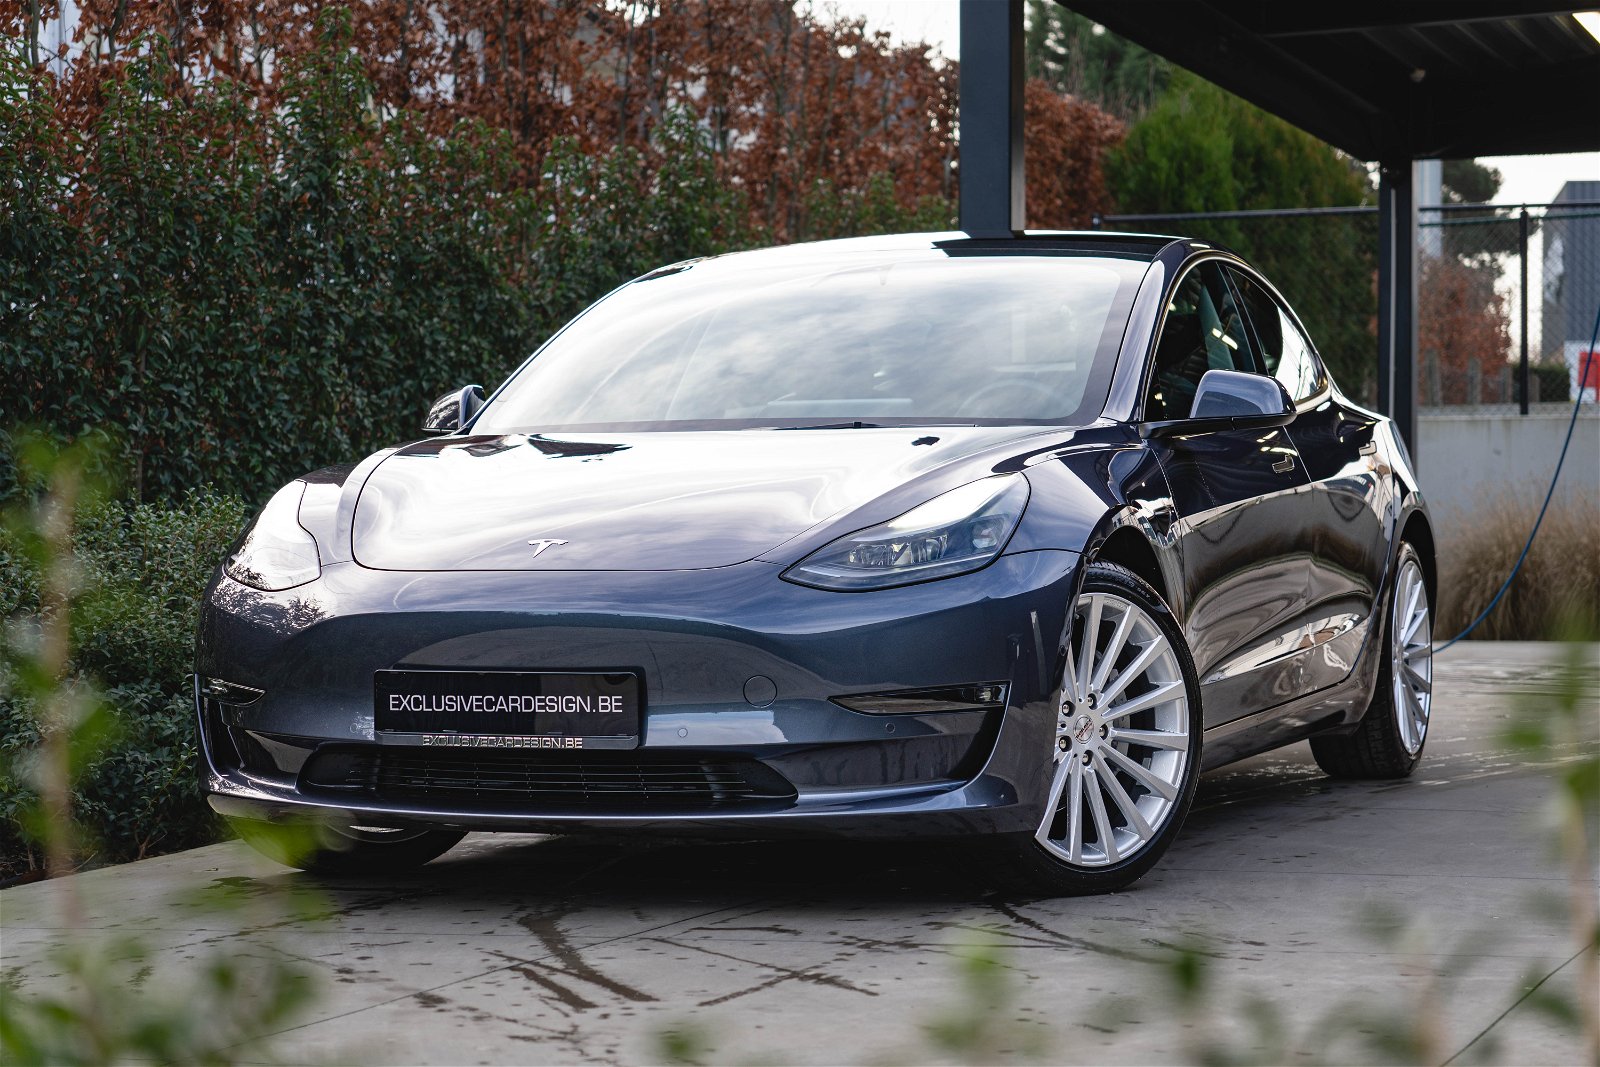 Door Saai Beperken Tweedehands Tesla Model 3 in stock in België